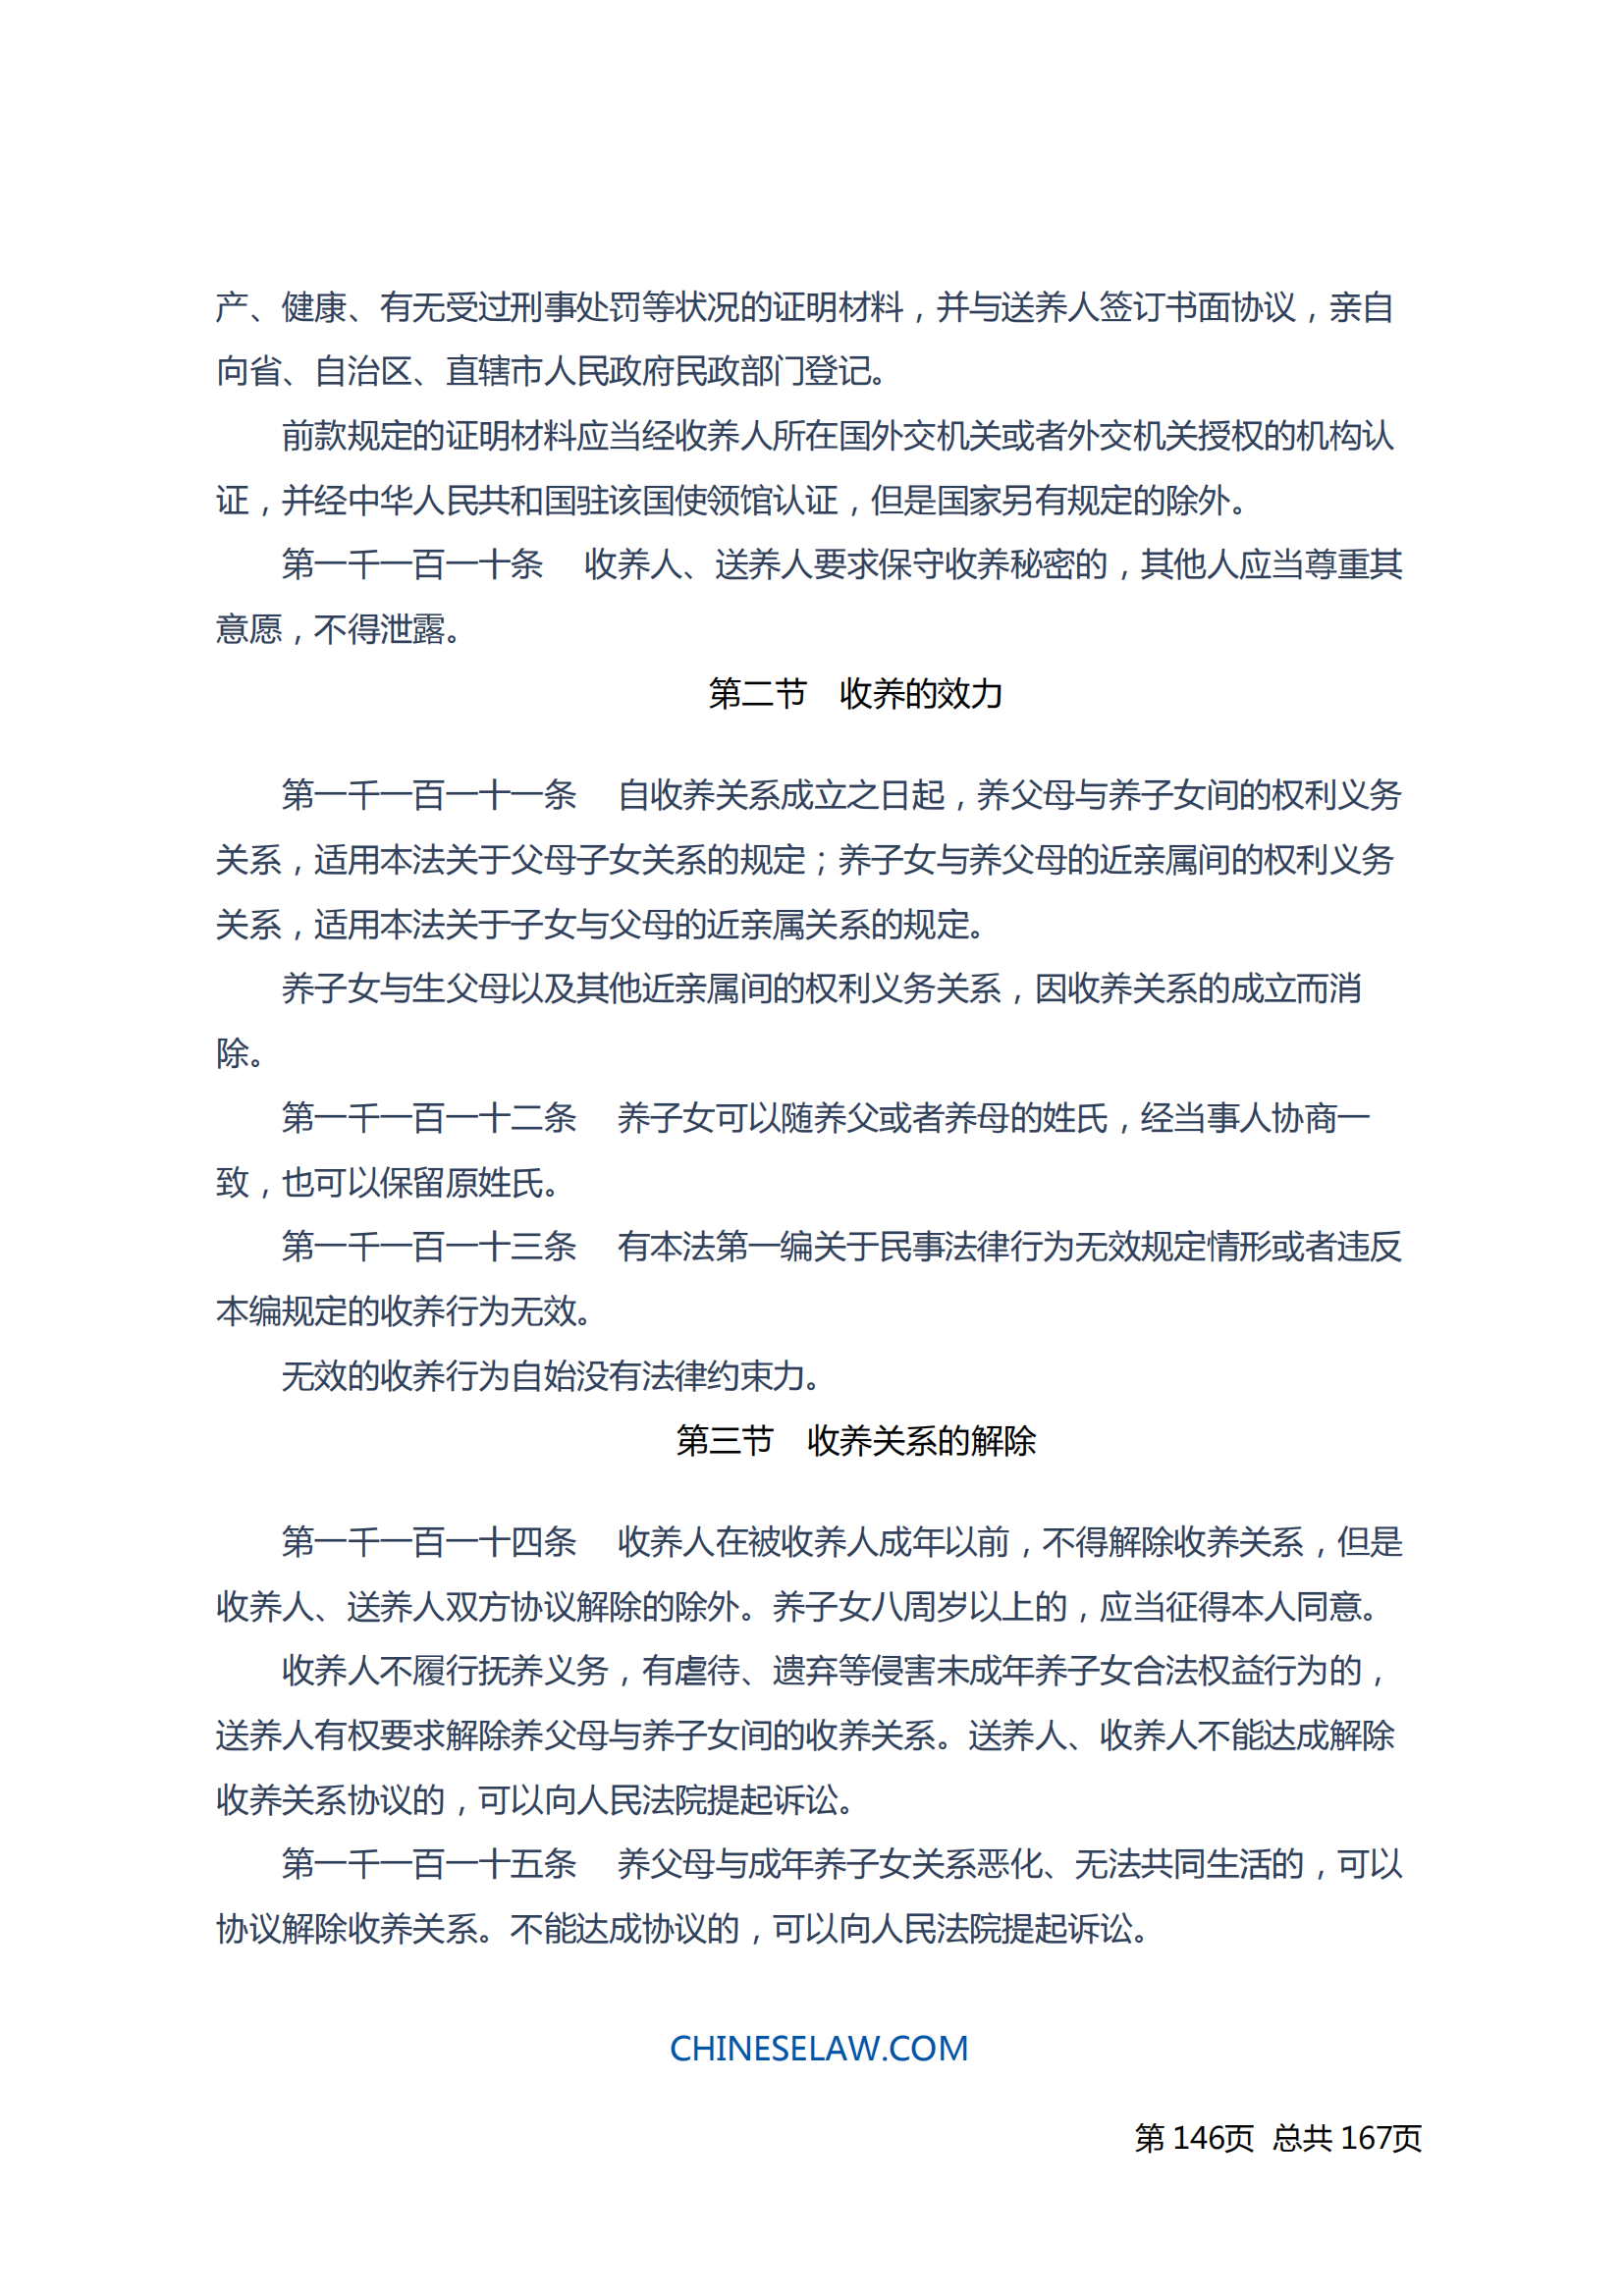 中华人民共和国民法典_145